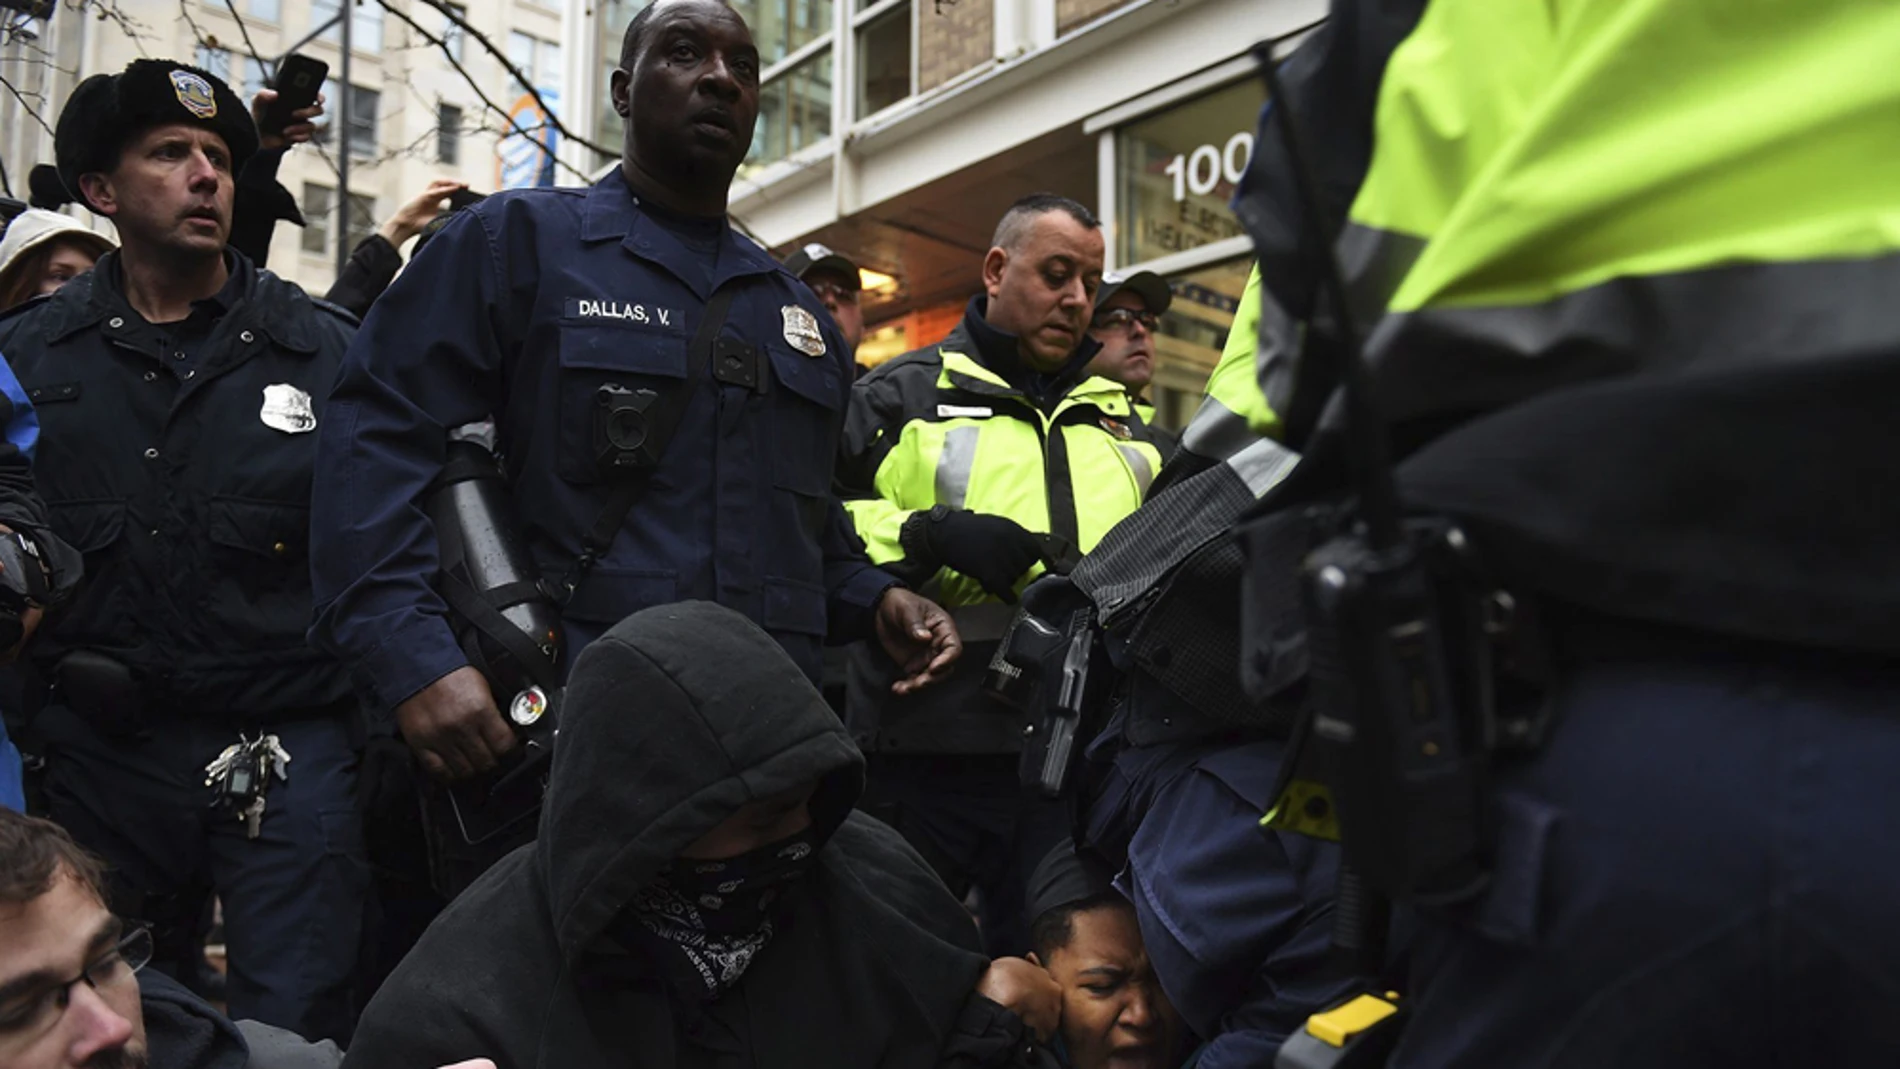 La Policía carga contra manifestantes antiTrump